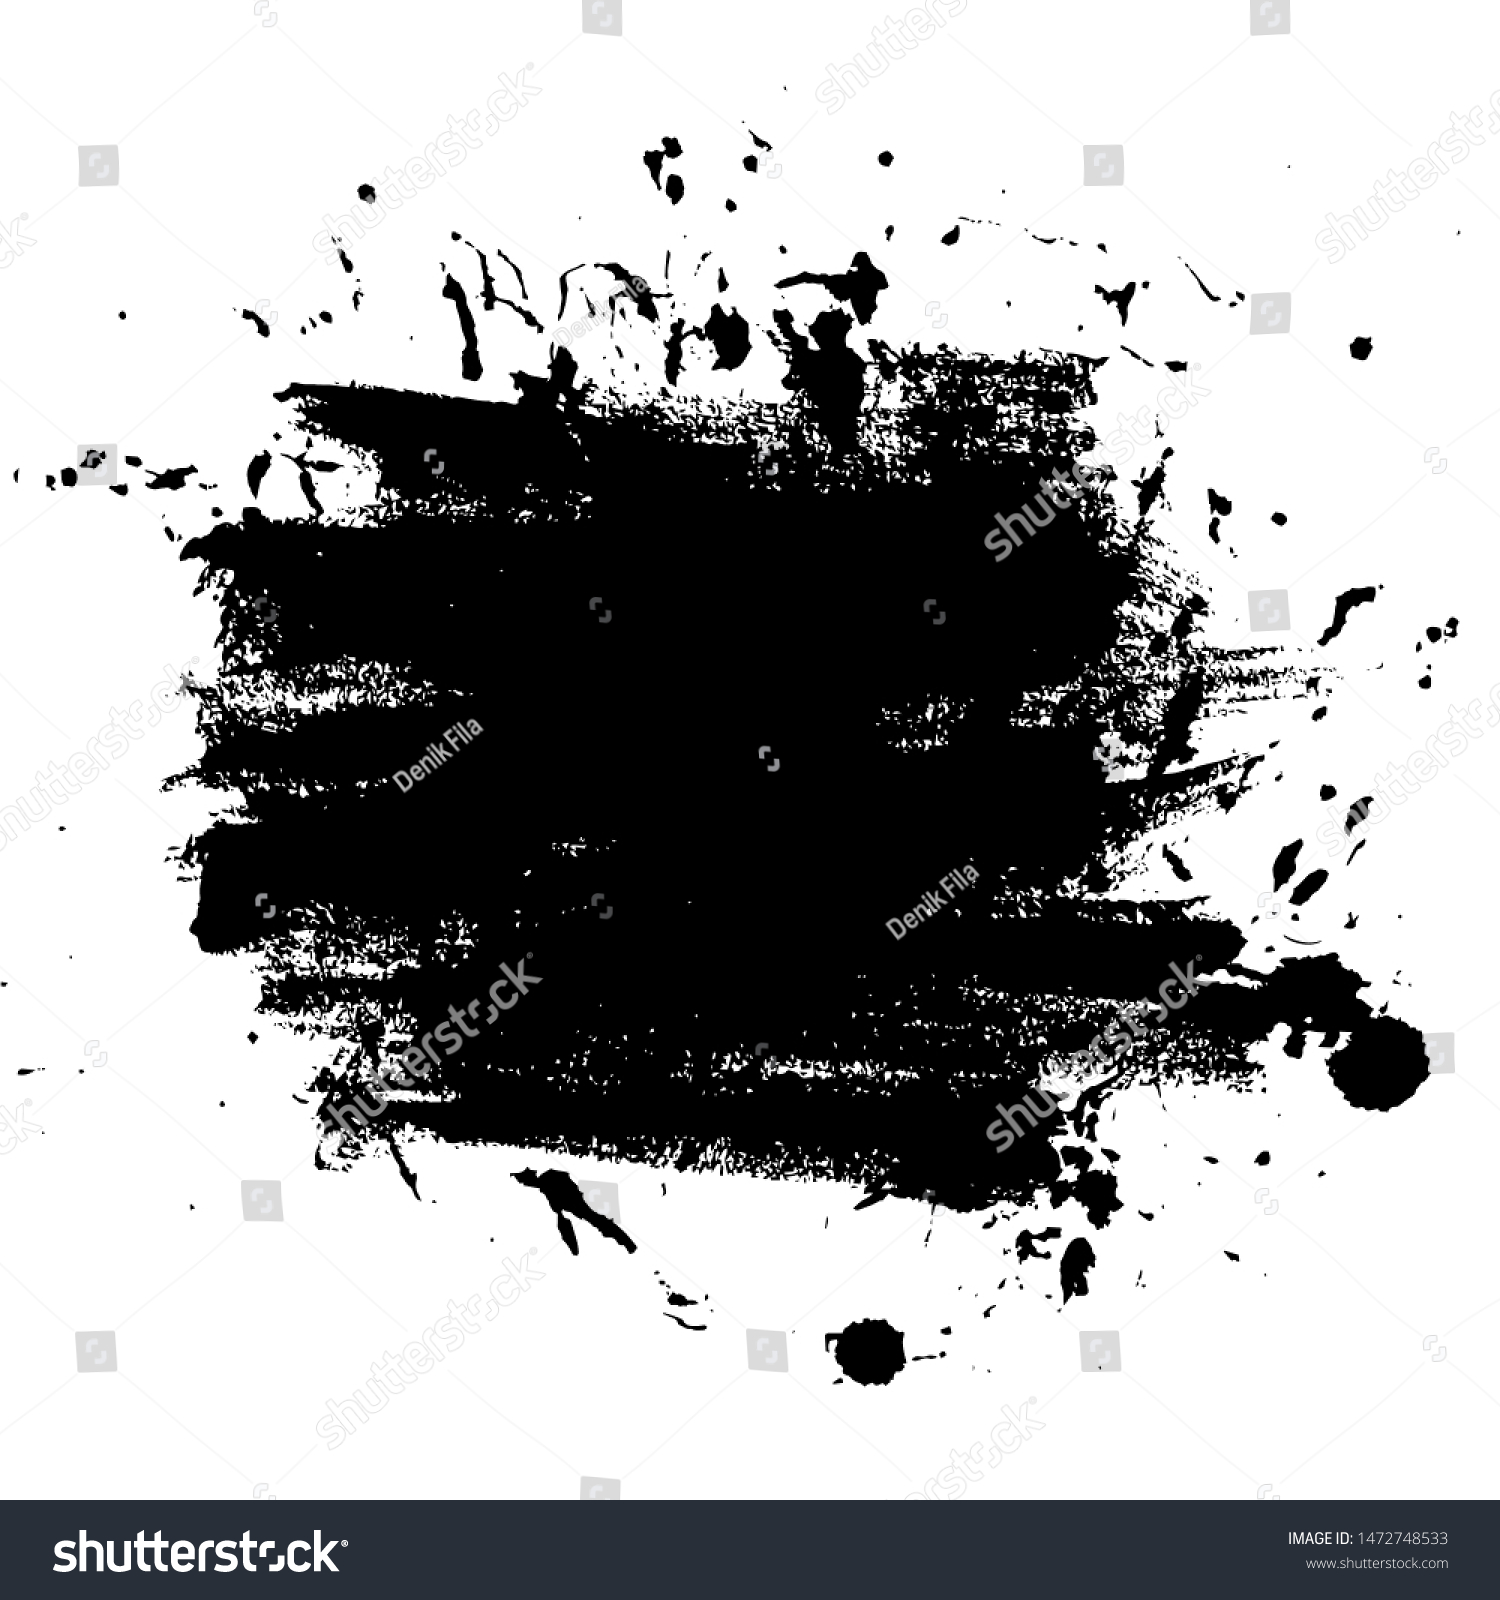 SVG of Ink Paintbrush Brushed Vector for Banner, Logo, Poster, Cover, Flyer, Brochure, Background, Texture or Wallpaper Element Download svg